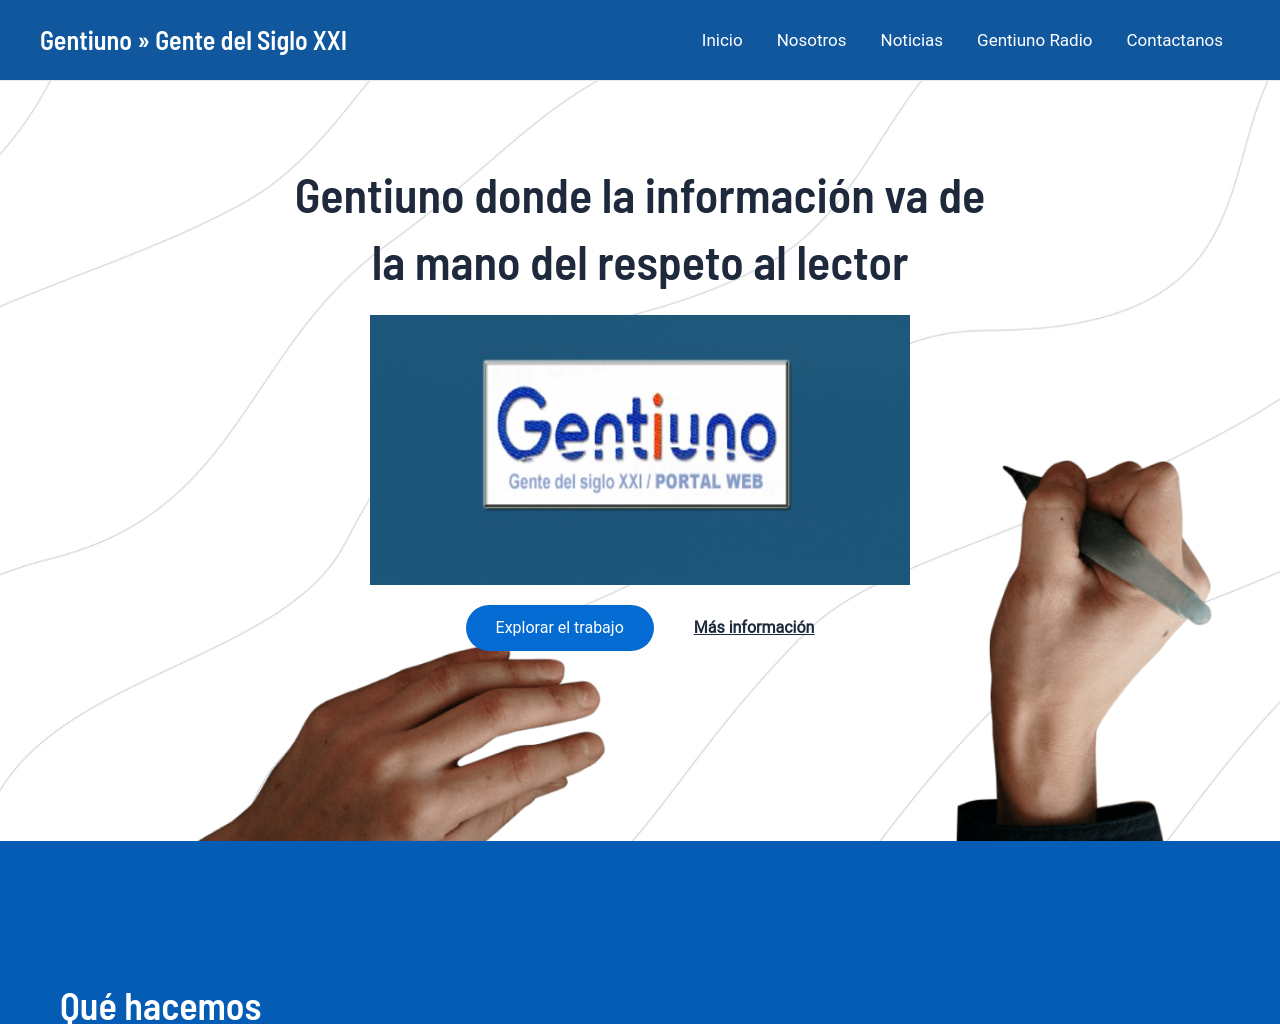 gentiuno.com